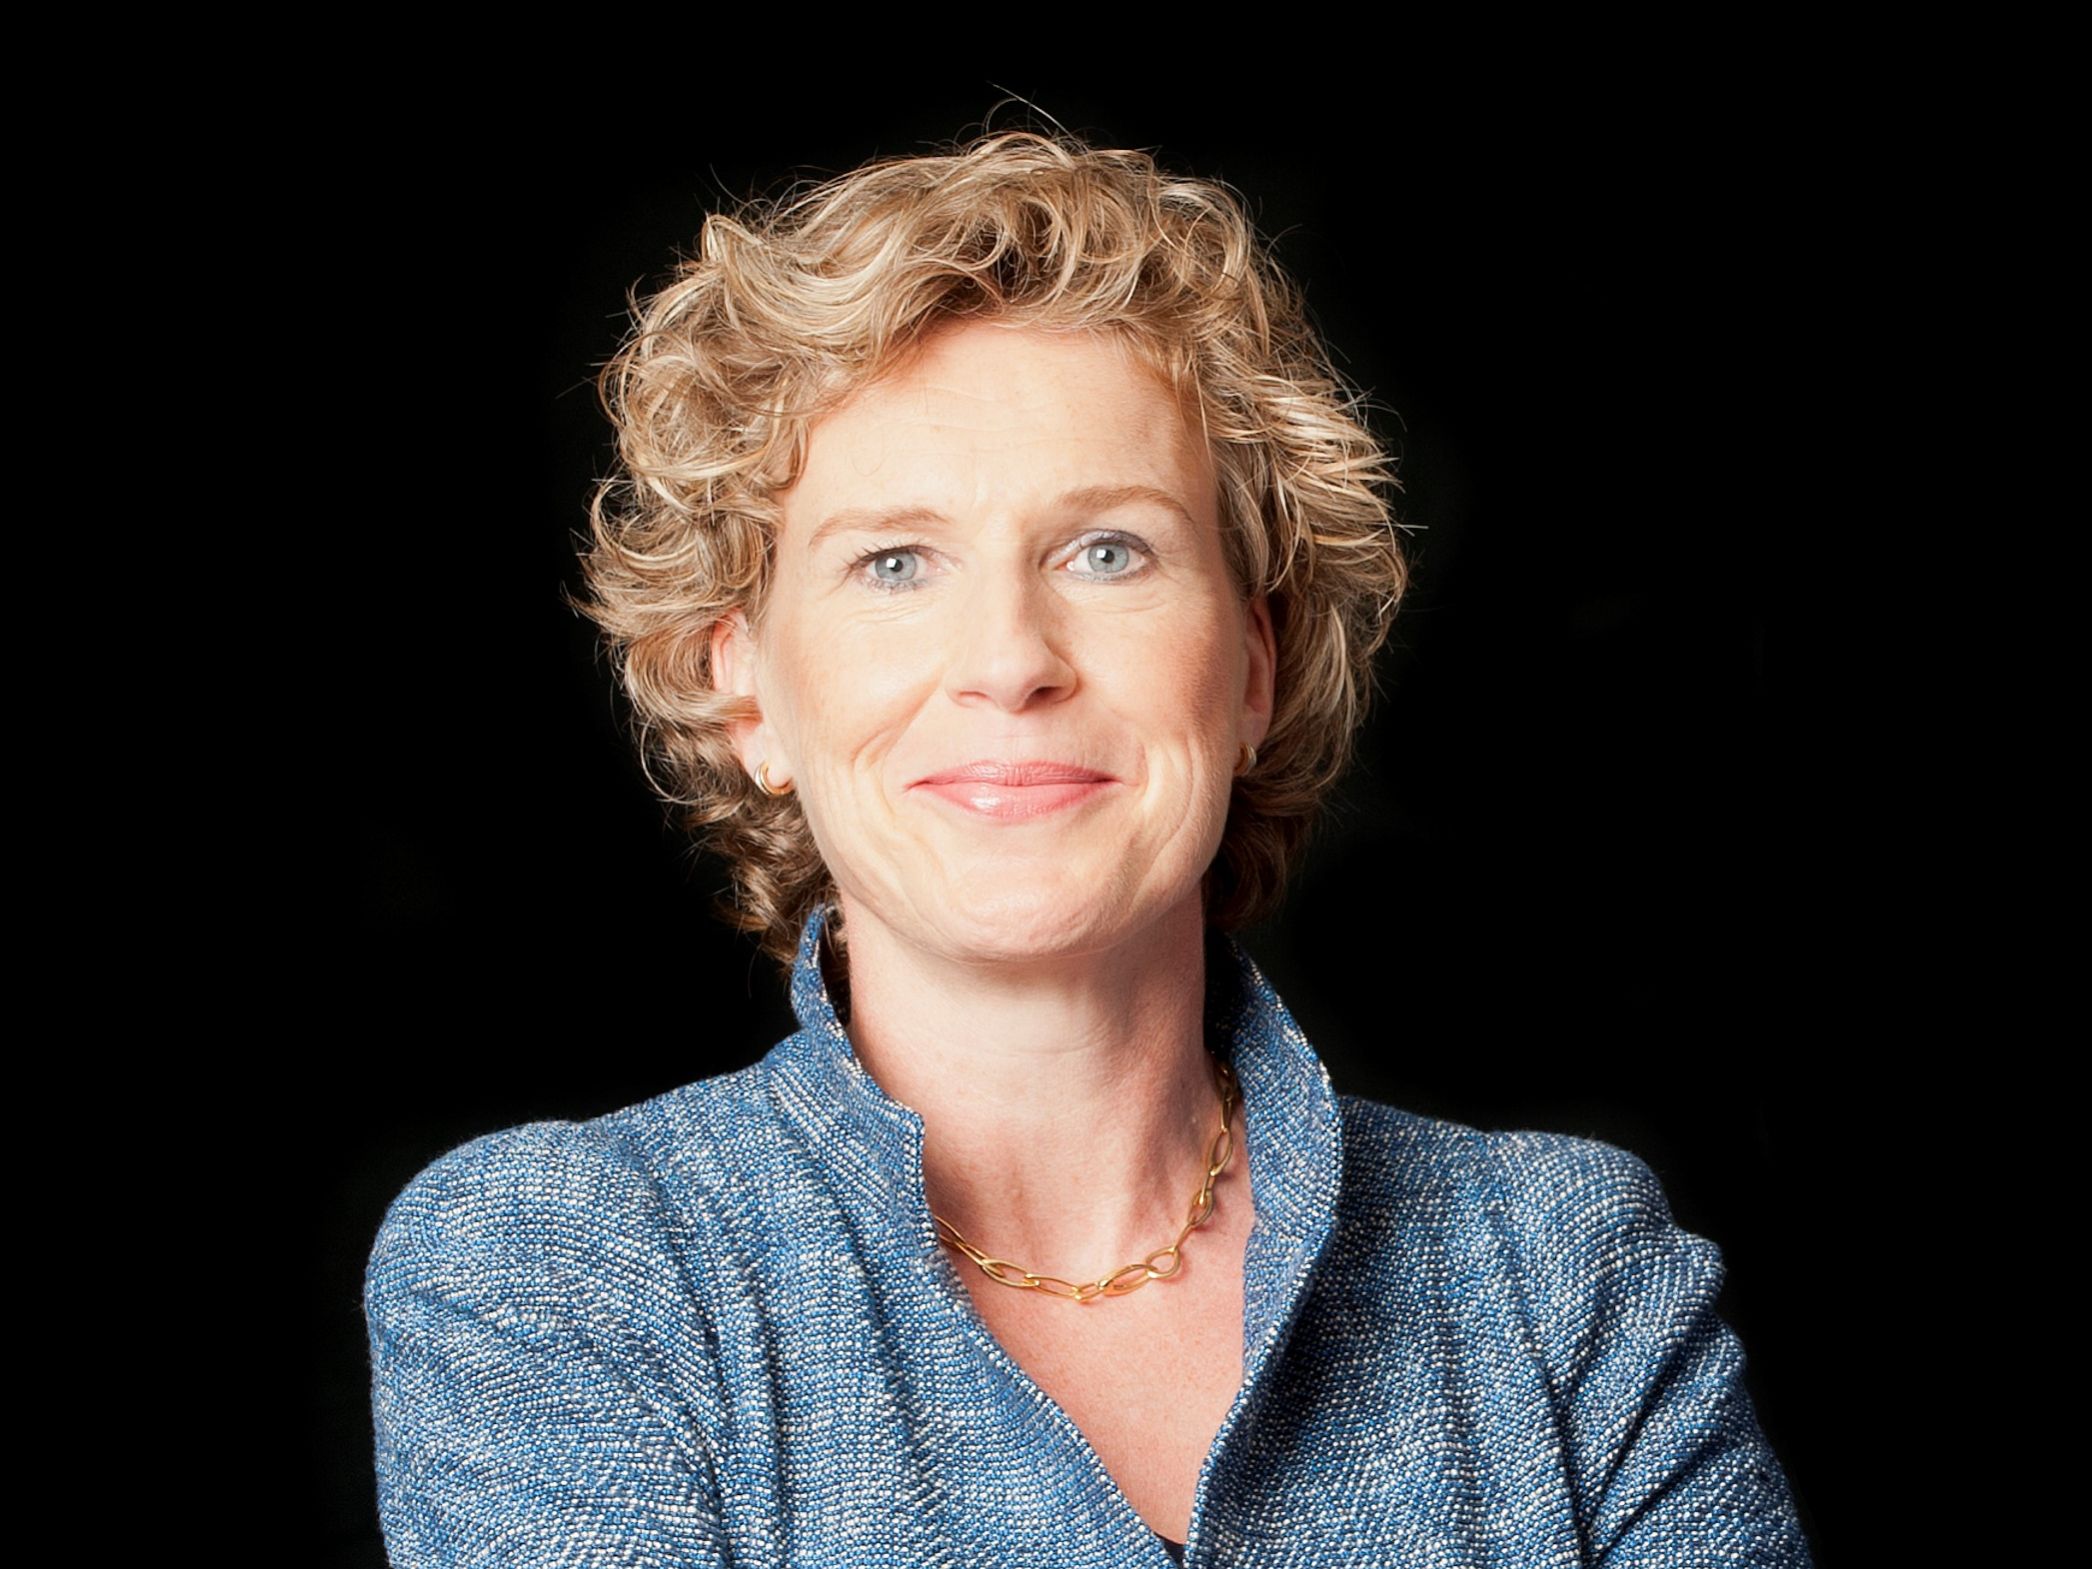 Prof. dr. Janka Stoker, Hoogleraar Leiderschap en Organisatieverandering aan de RUG